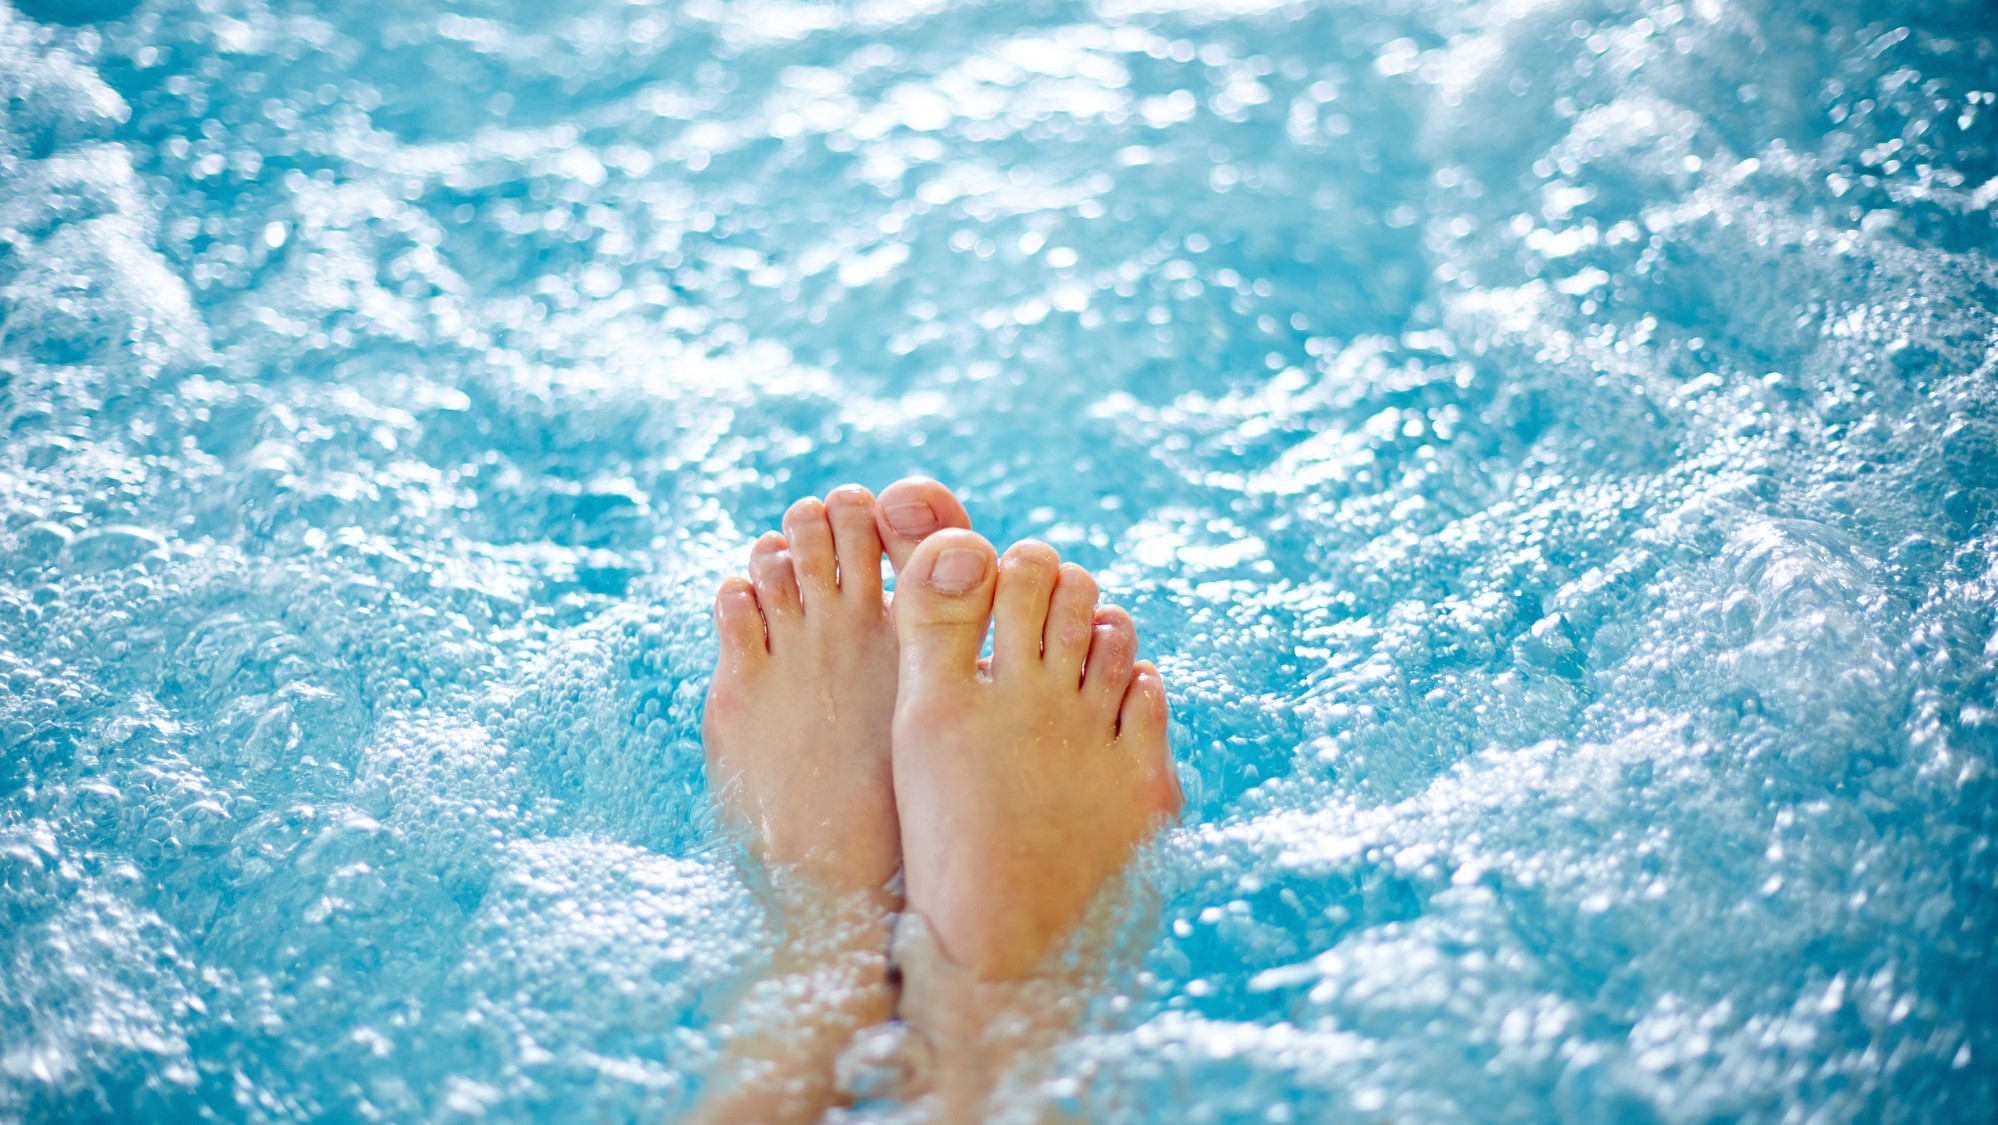 Feet in bubble spa pool